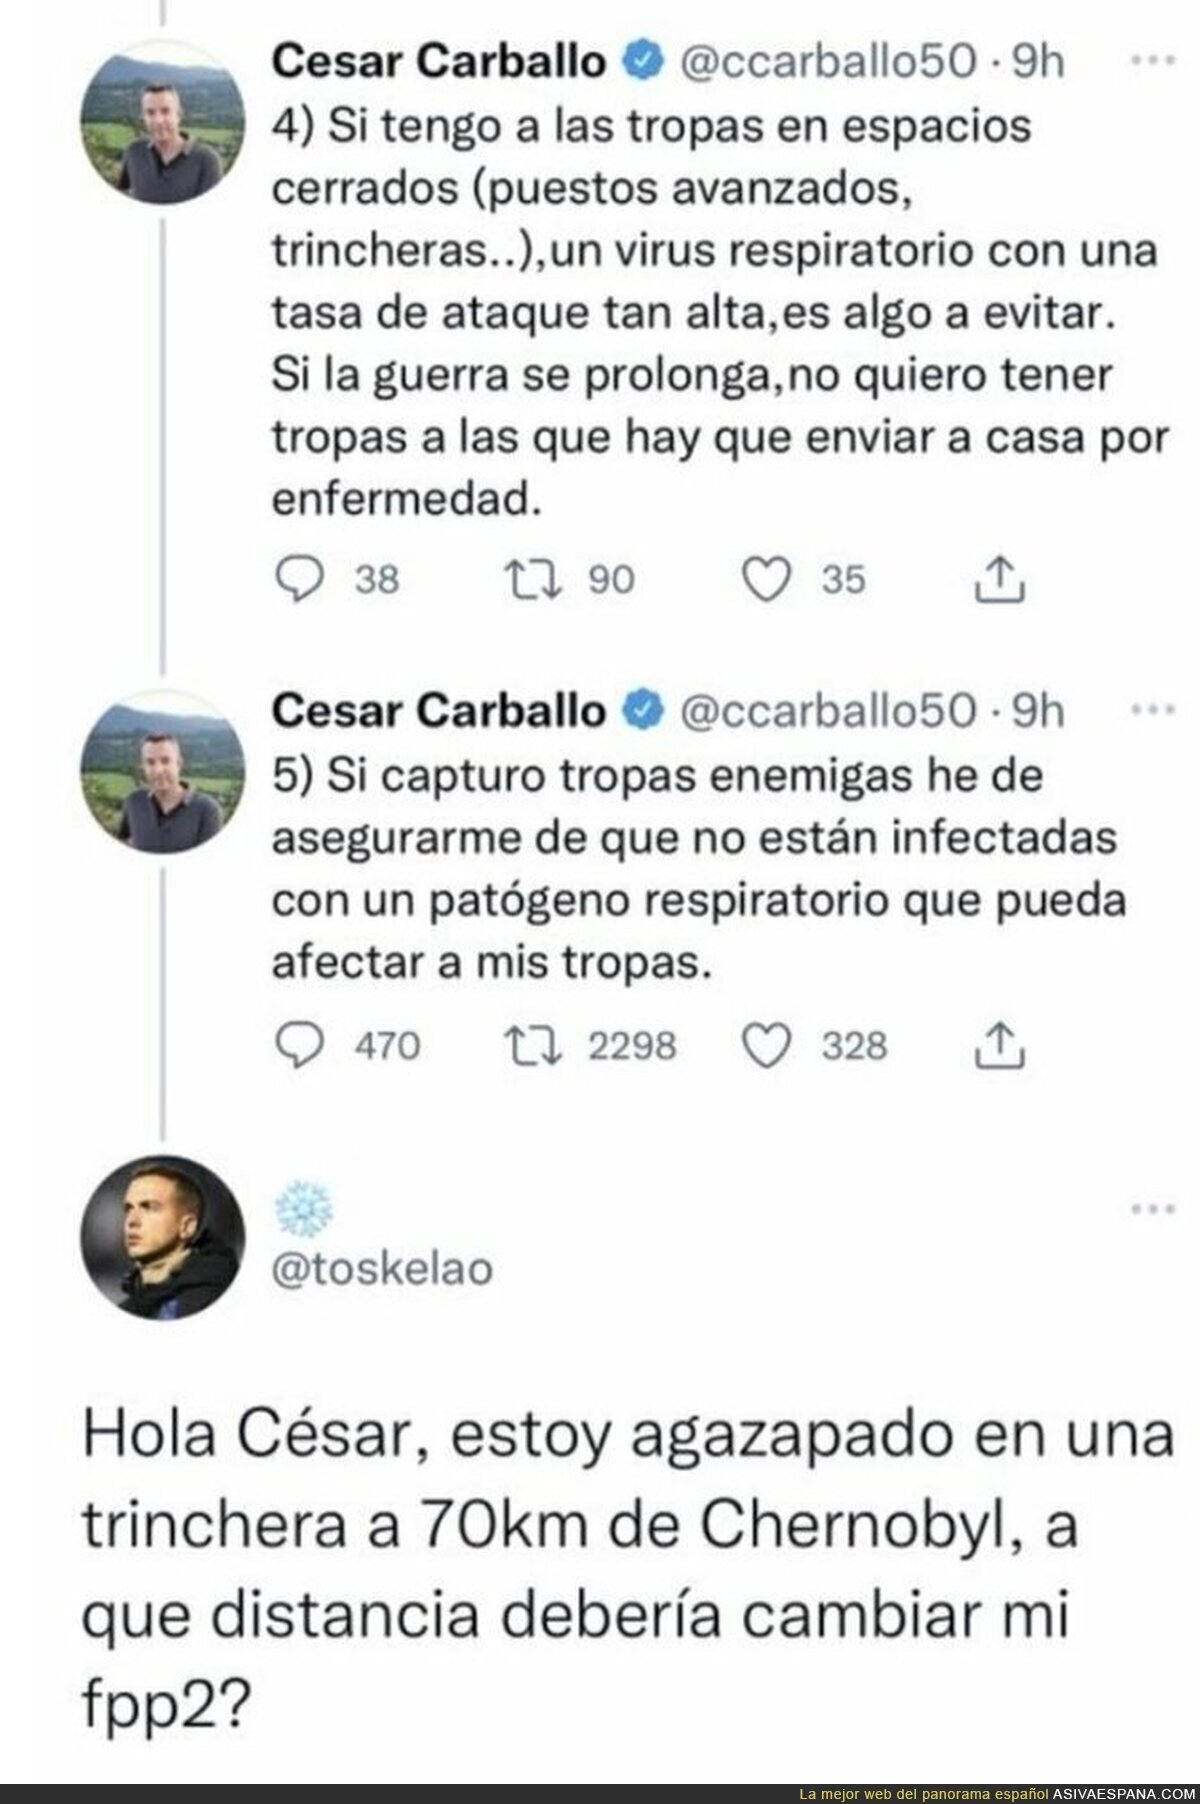 La grandiosa respuesta al sabelotodo de César Carballo hablando del COVID y la guerra de Rusia contra Ucrania